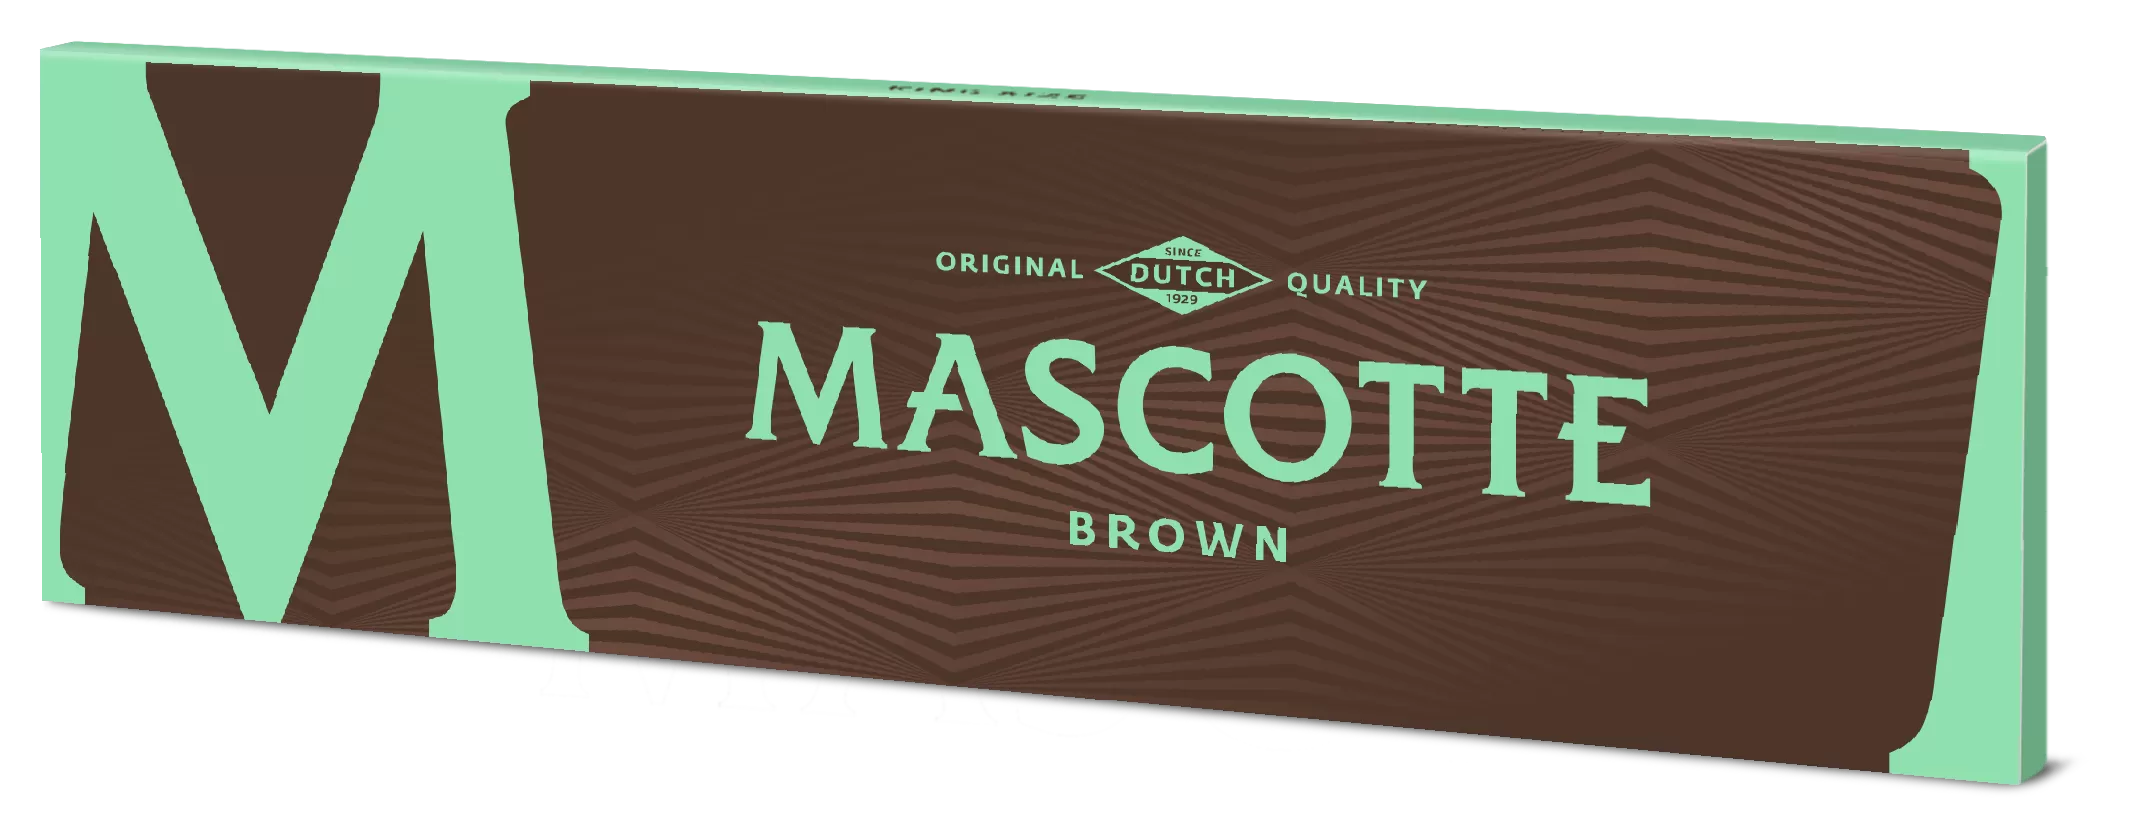 Mascotte Brown Slim Size Magnet longues feuille à rouler